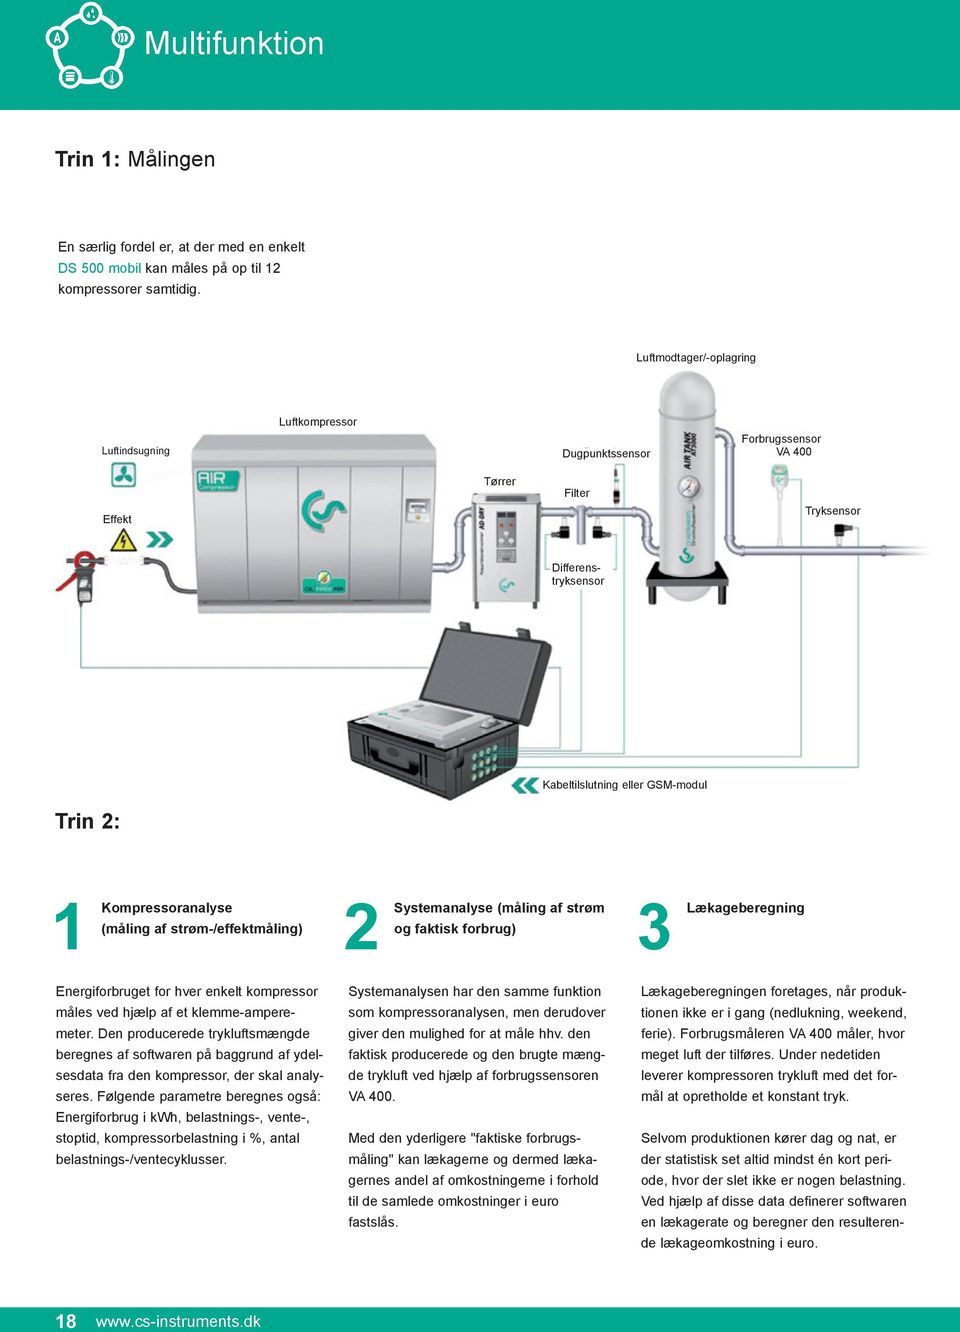 Kompressoranalyse (måling af strøm-/effektmåling) Systemanalyse (måling af strøm og faktisk forbrug) Lækageberegning Energiforbruget for hver enkelt kompressor måles ved hjælp af et